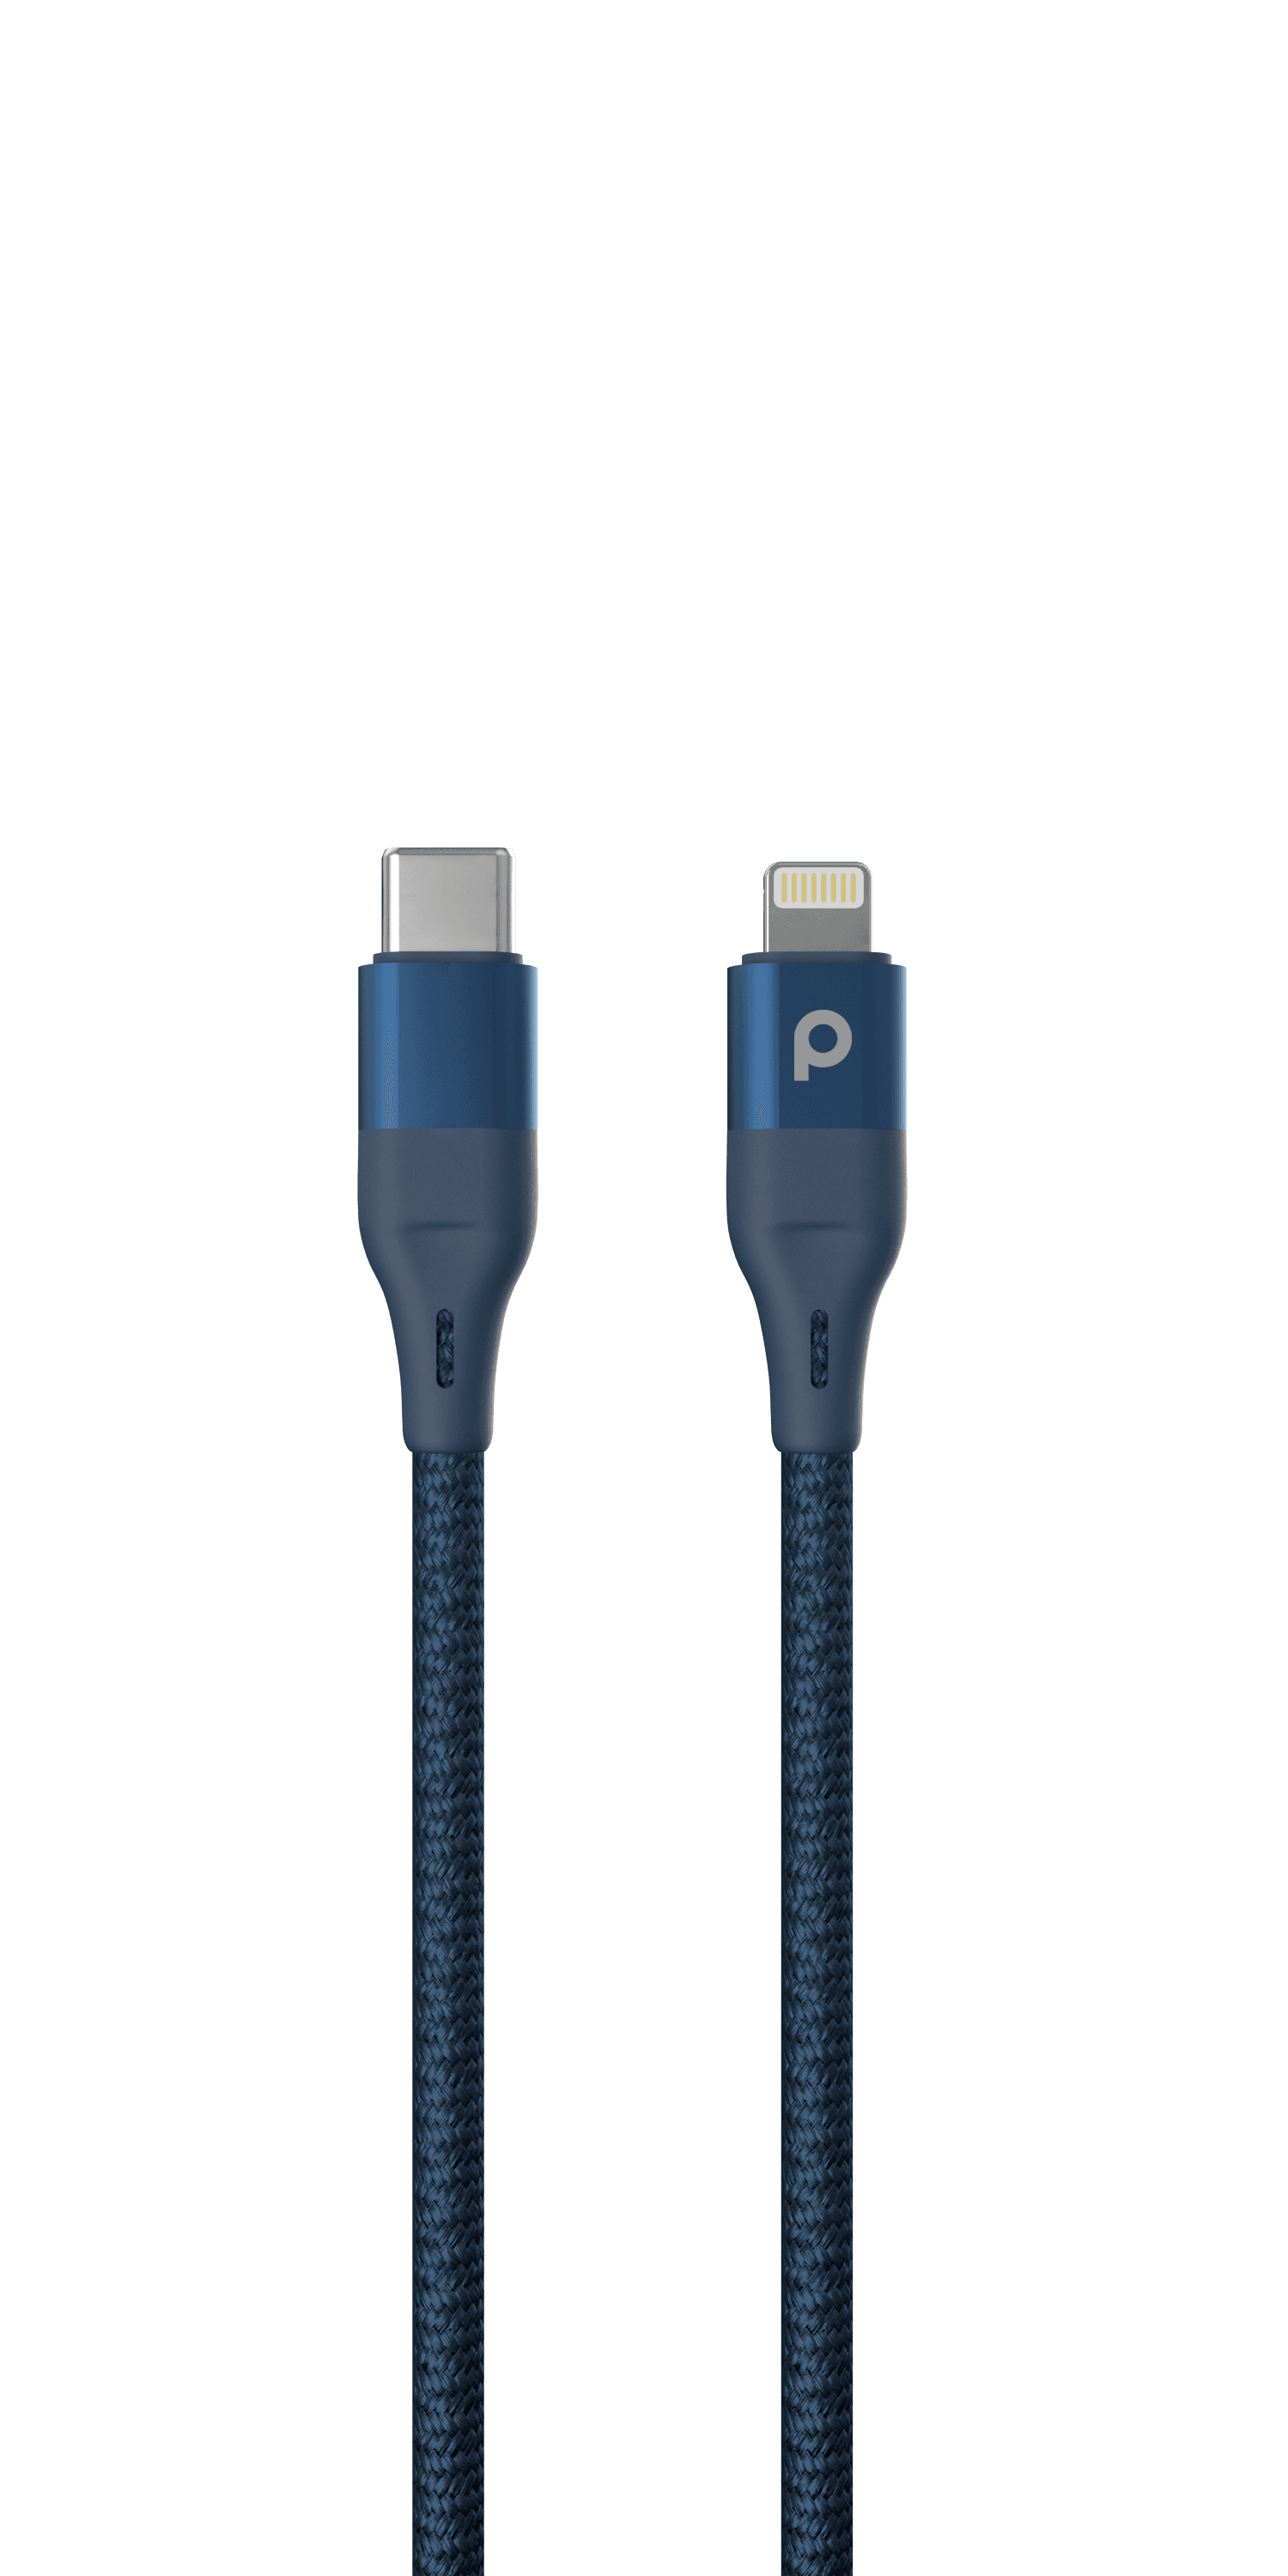 كيبل شحن من USB-C الى Lightning أزرق Aluminum Braided Lightning Cable - Porodo